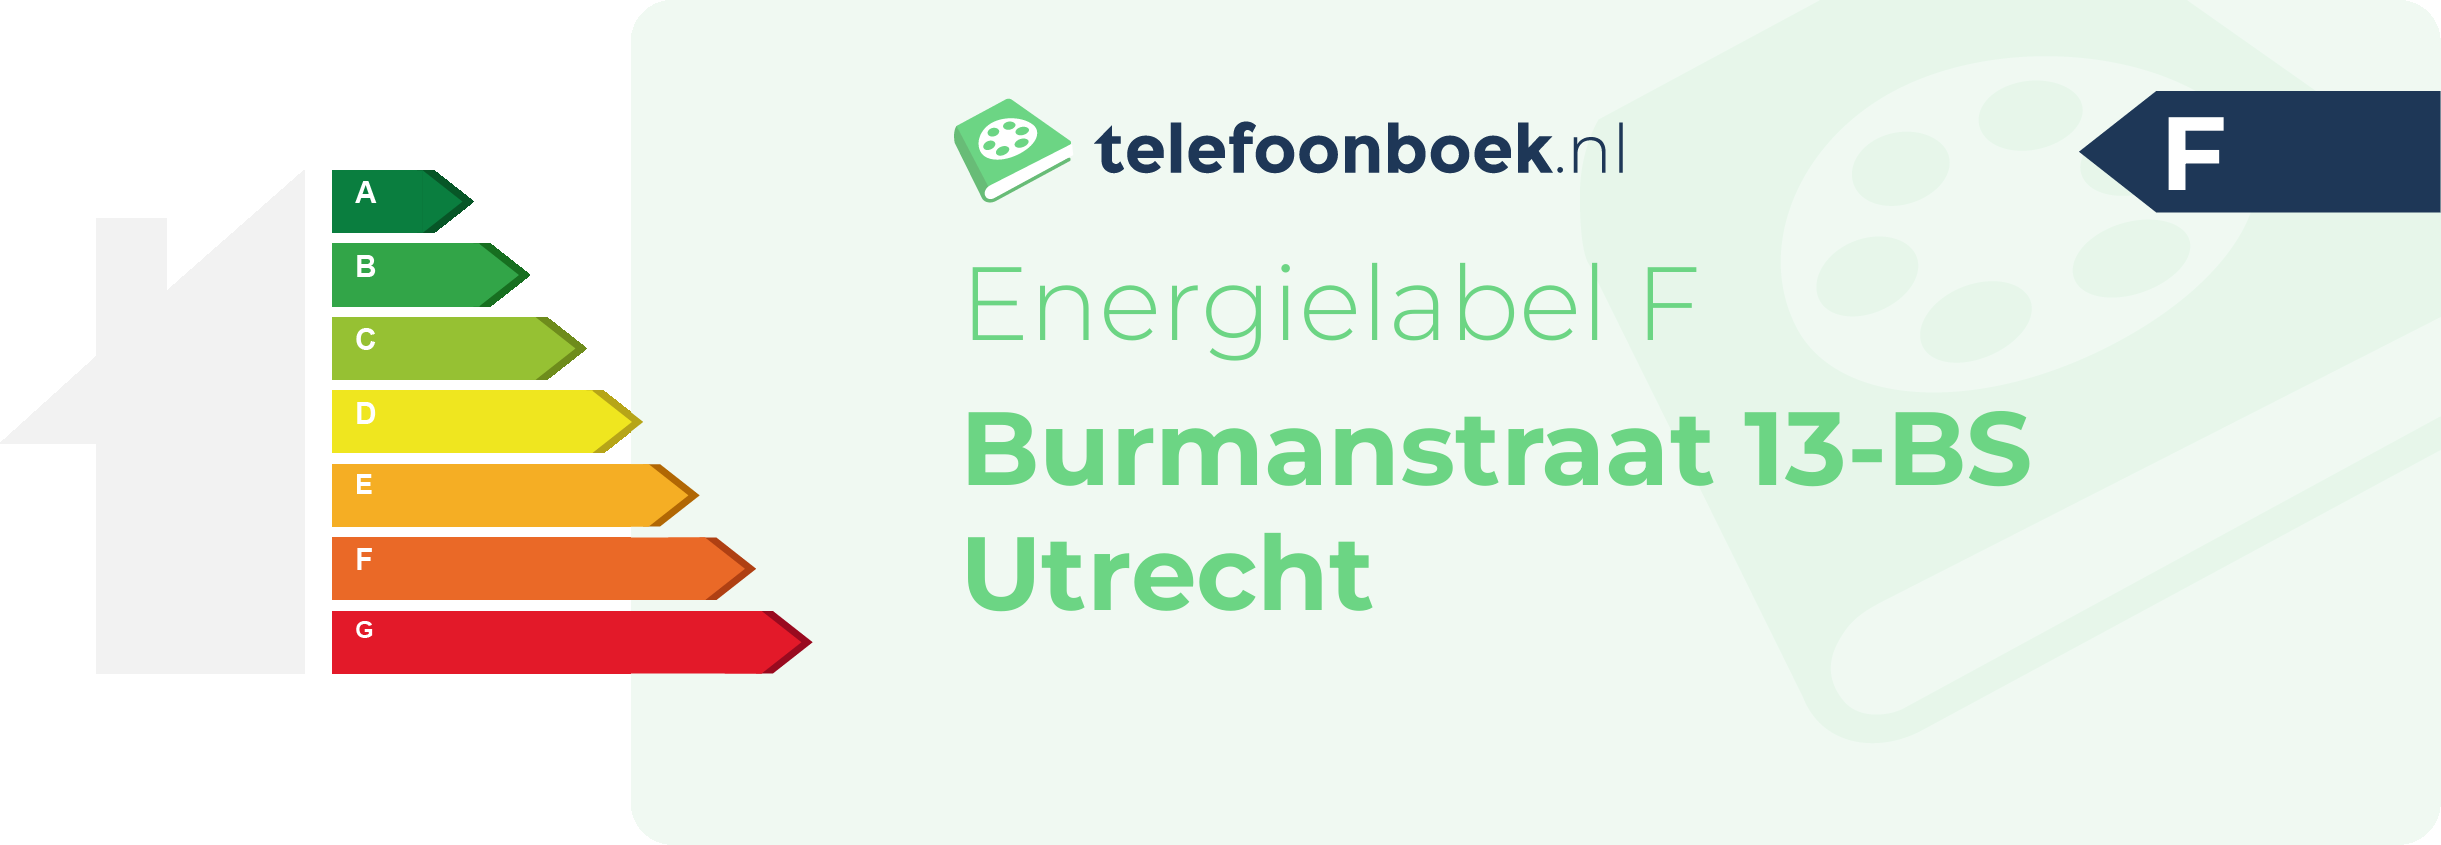 Energielabel Burmanstraat 13-BS Utrecht